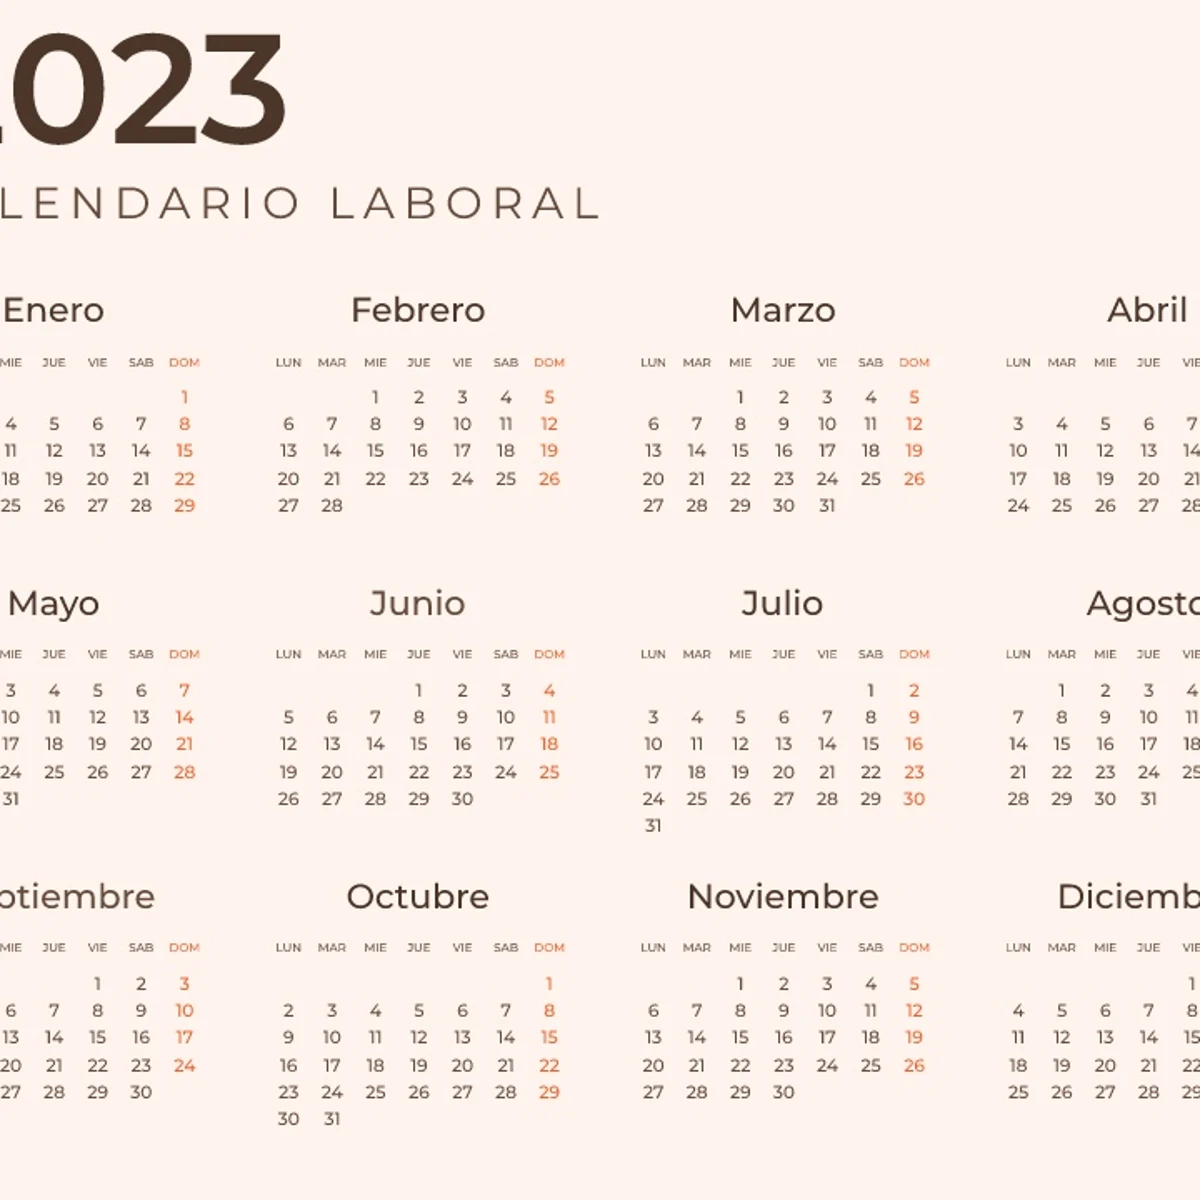 Festivos Galicia 2023 Calendario laboral: Días festivos y puentes del año 2023